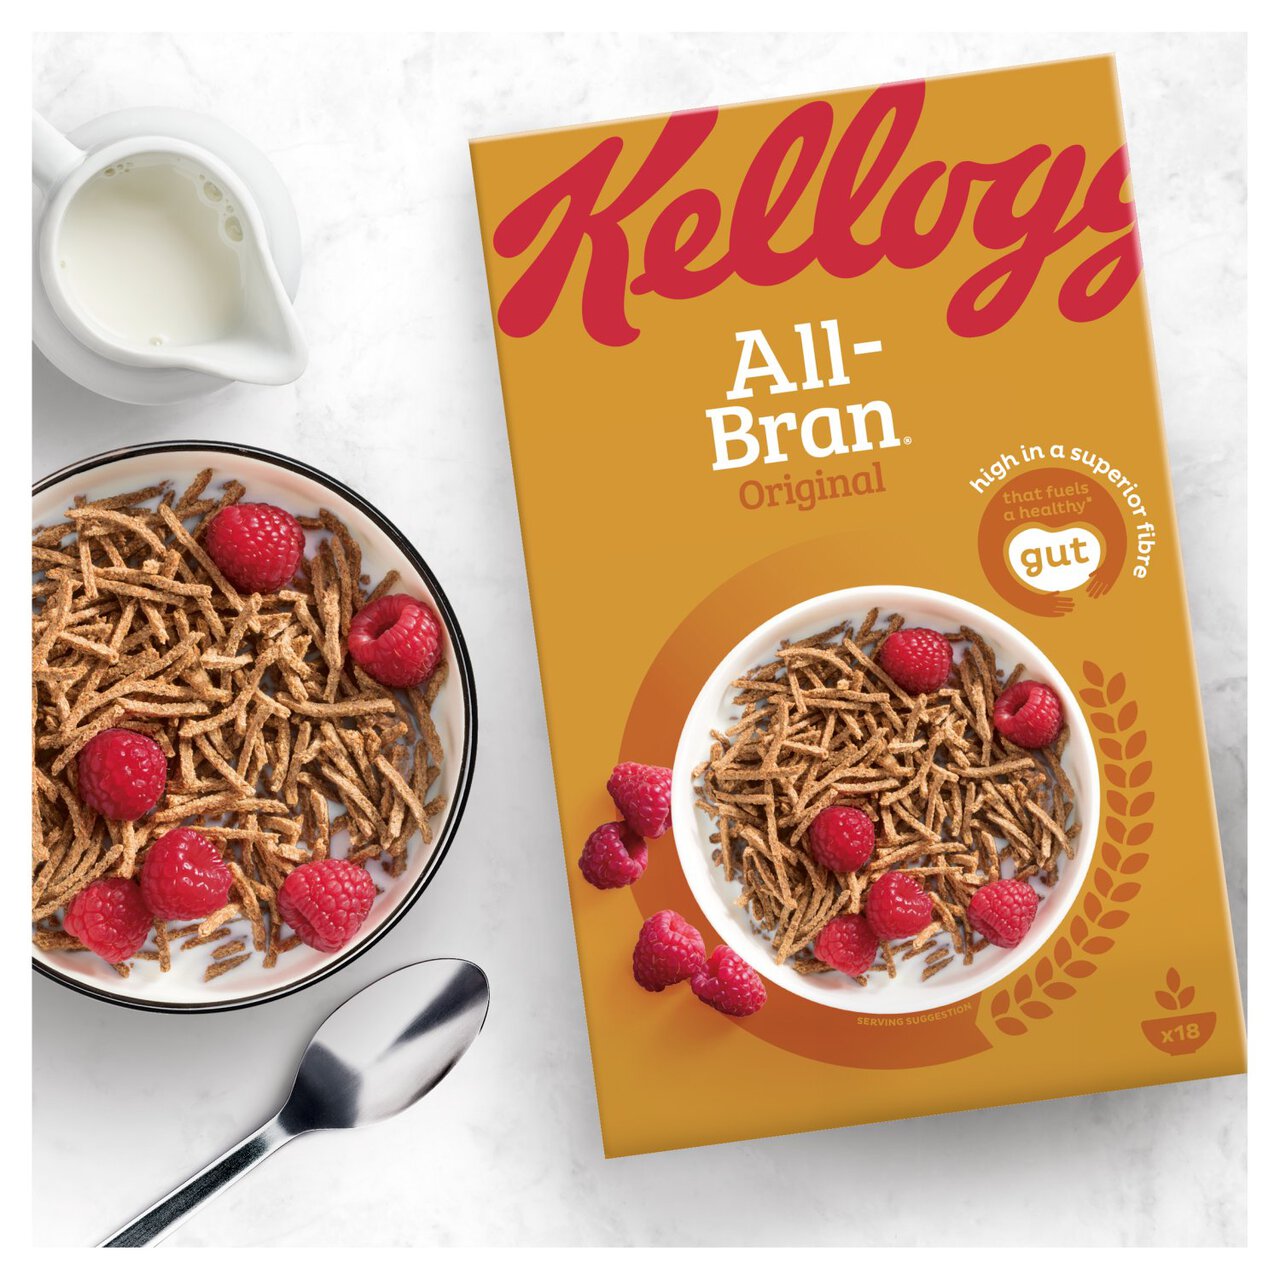 All-Bran Original* Cereal